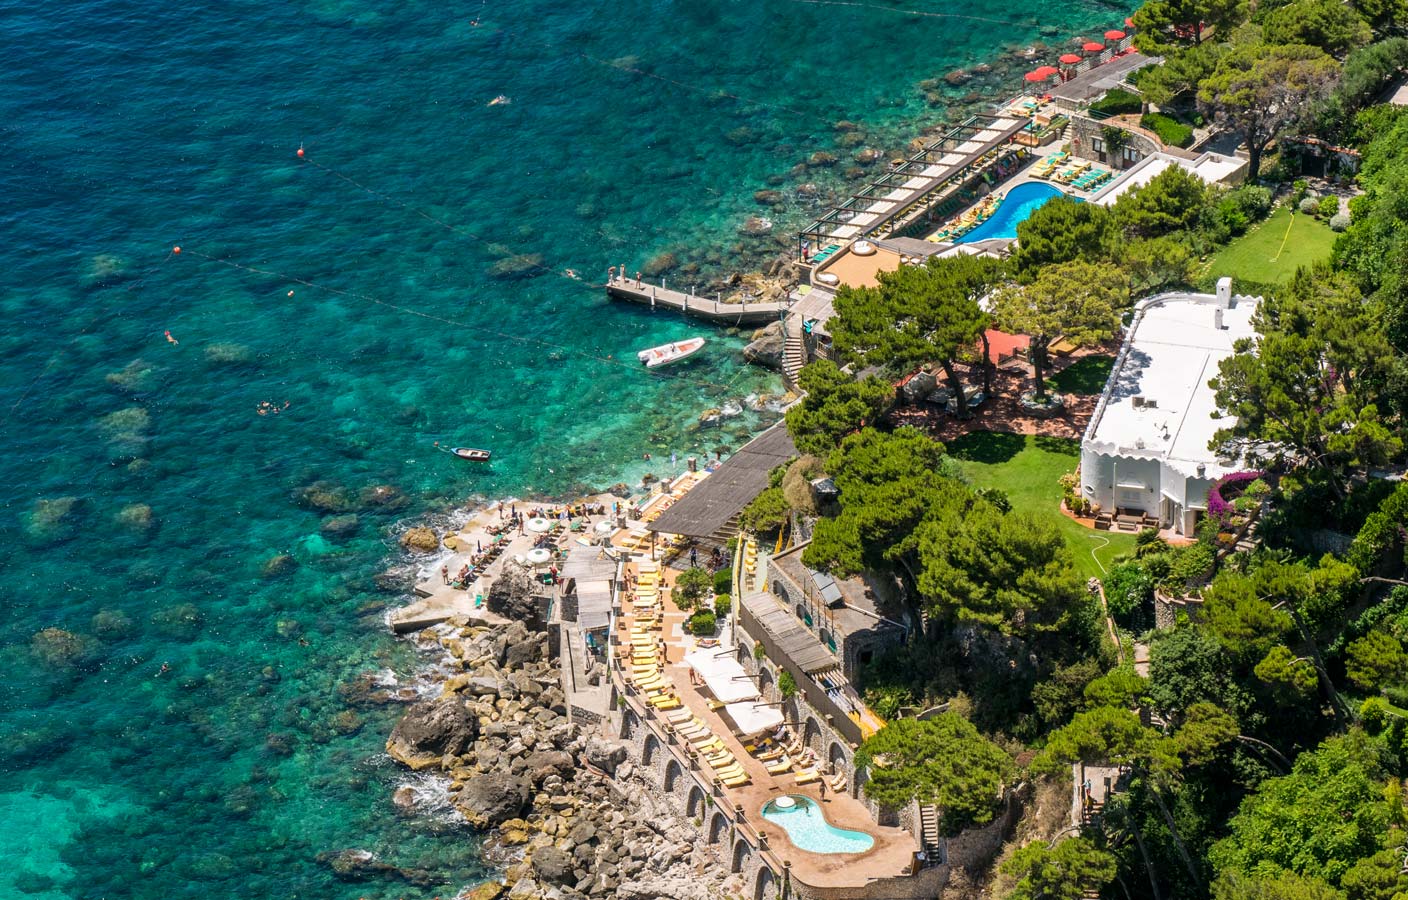 The best swimming pool in Capri - La Canzone del Mare